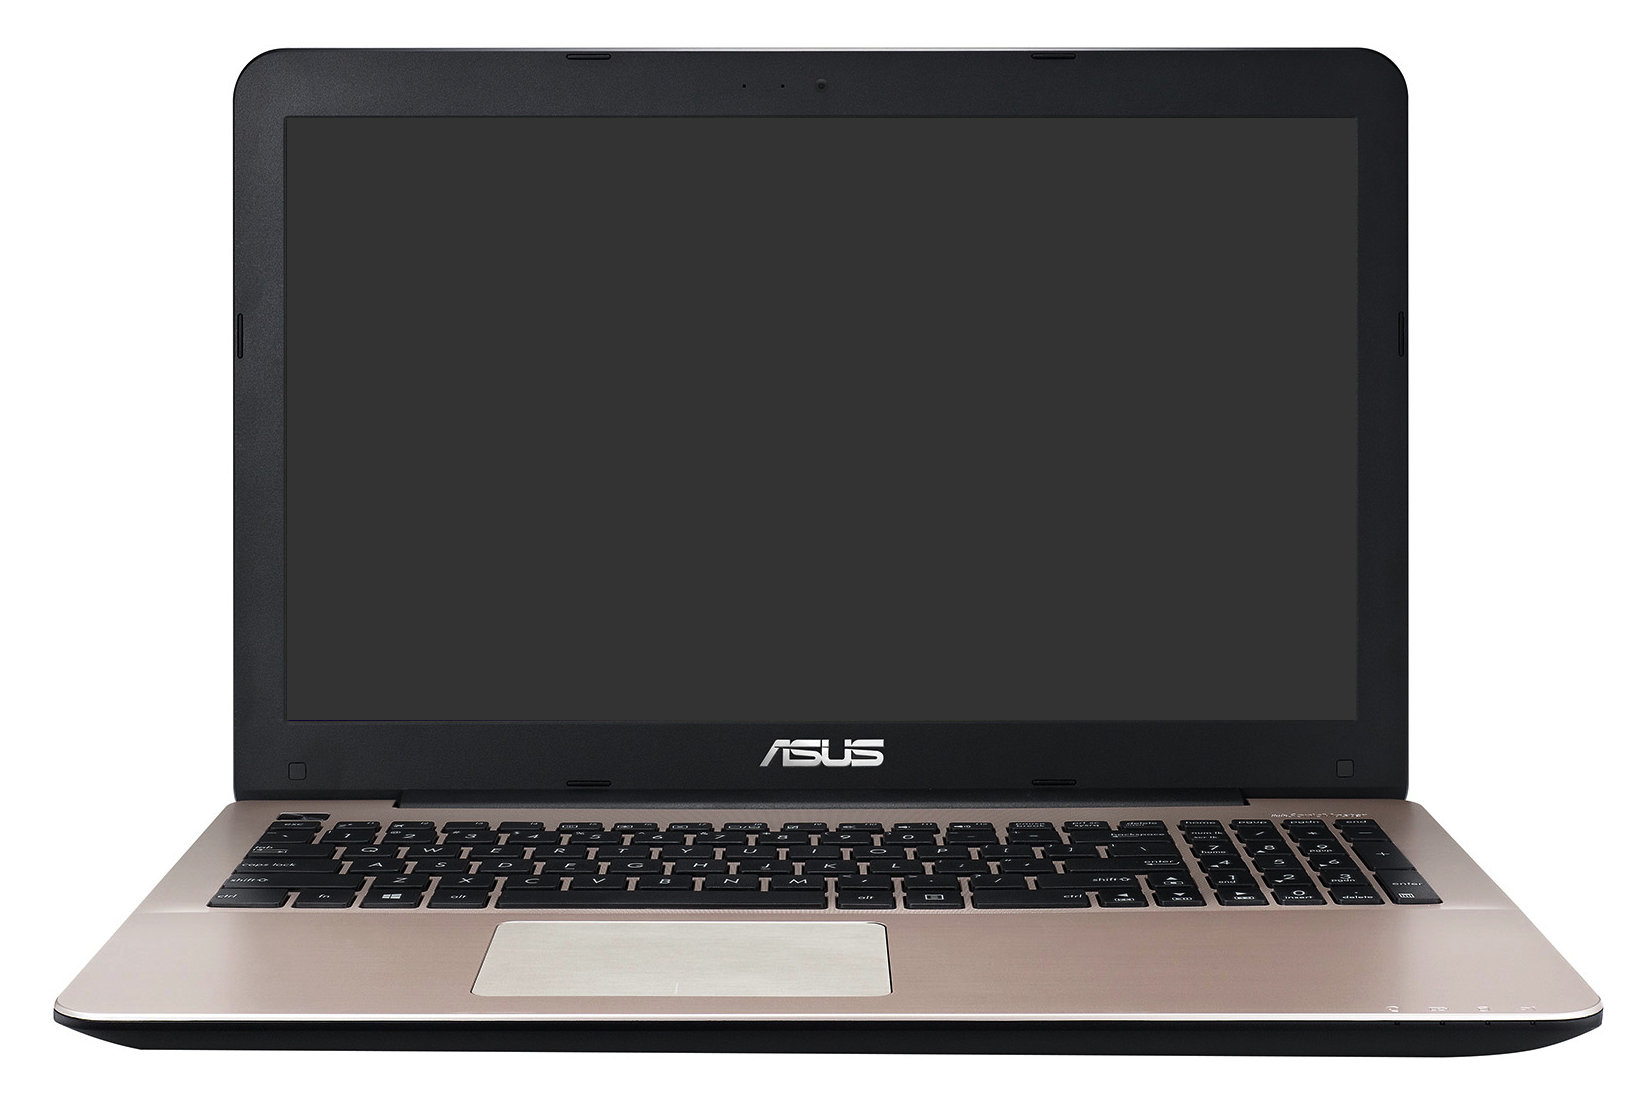 Купить Ноутбуки Asus X555ld